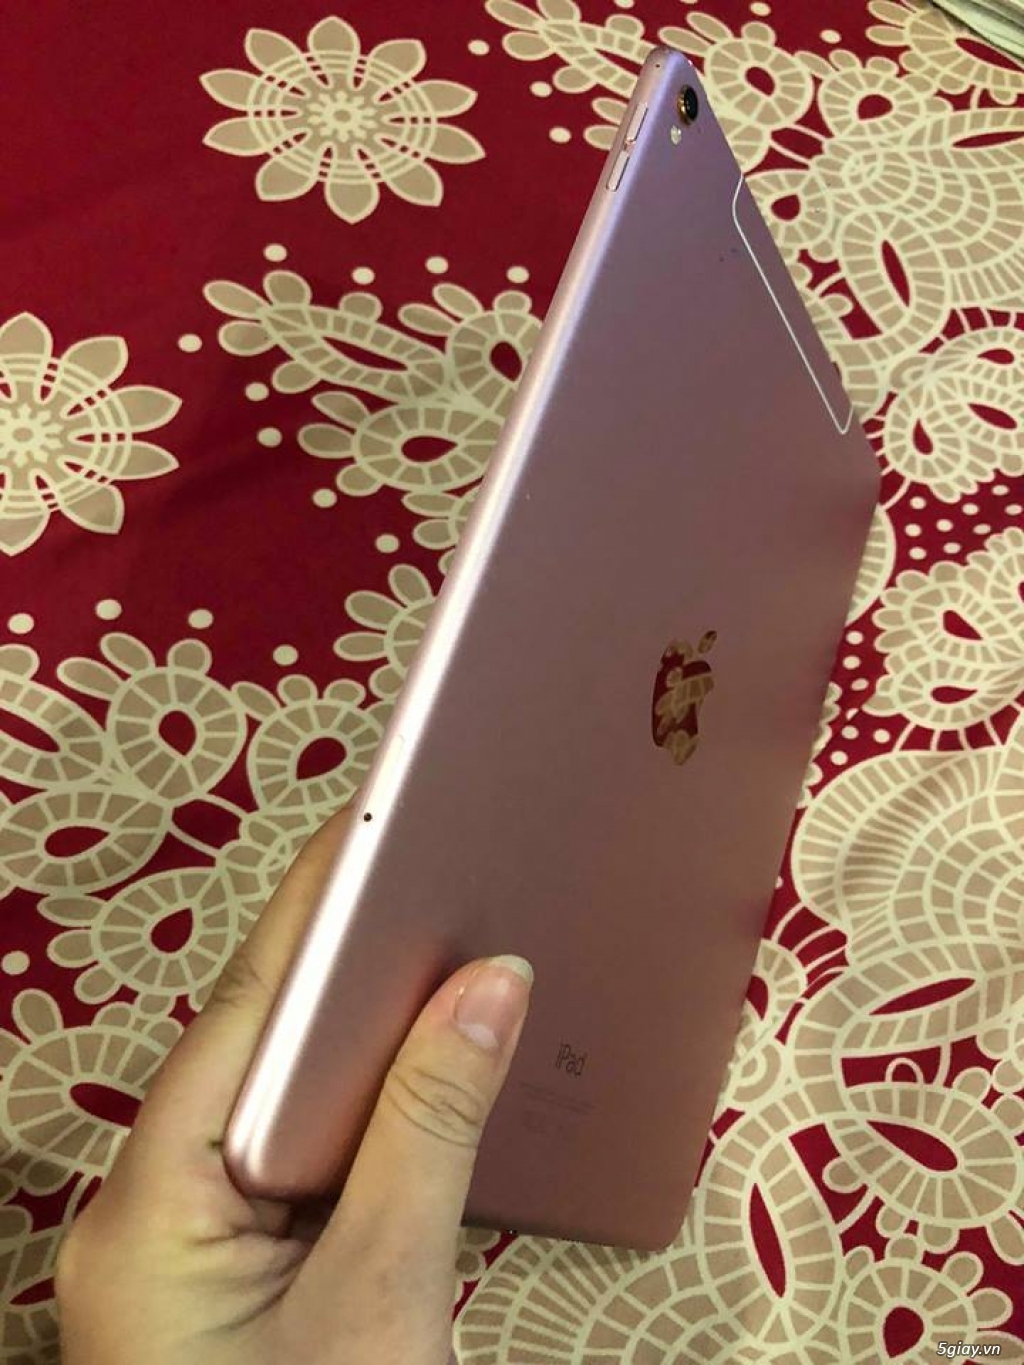 Ipad Pro 9.7 inch Rose Gold 128gb Wifi 4G ít xài giá tốt - 2